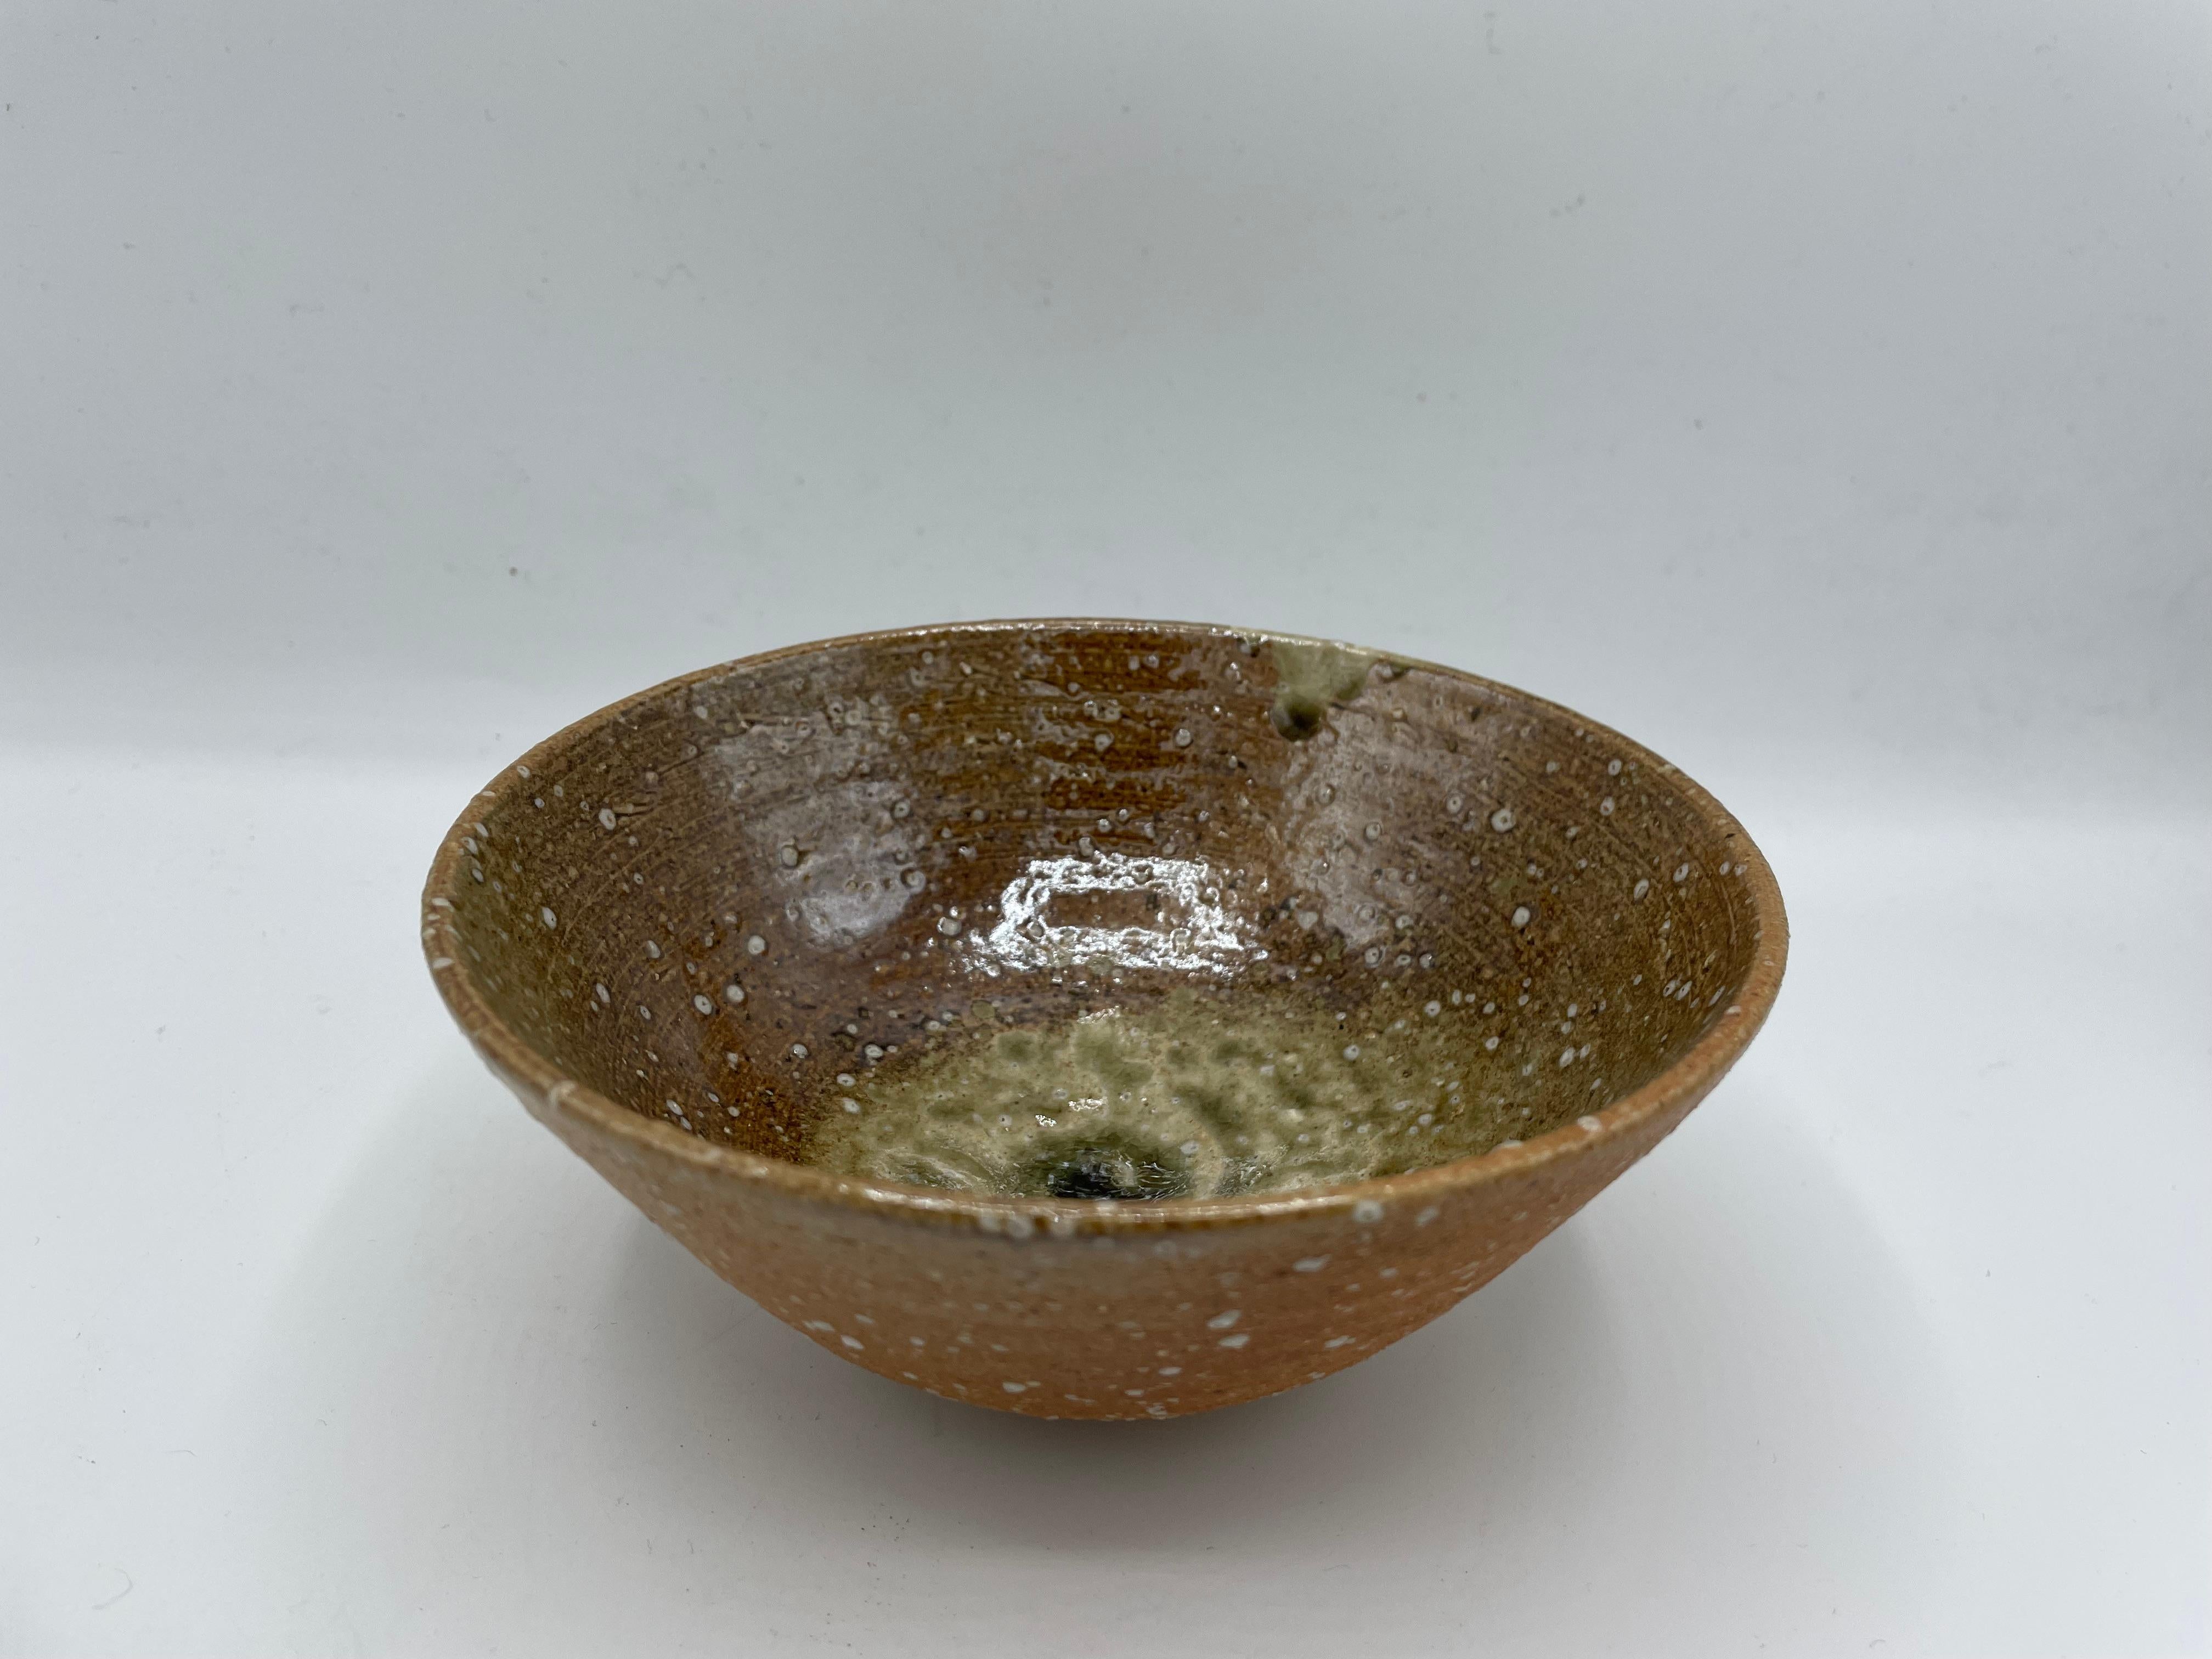 Il s'agit d'un bol à thé matcha que nous utilisons pour la cérémonie du thé.
Ce bol de matcha (matchawan en japonais) a été fabriqué dans les années 1980, à l'époque de Showa.
Il s'agit de la céramique de Shigaraki et sur le fond de ce bol, il est